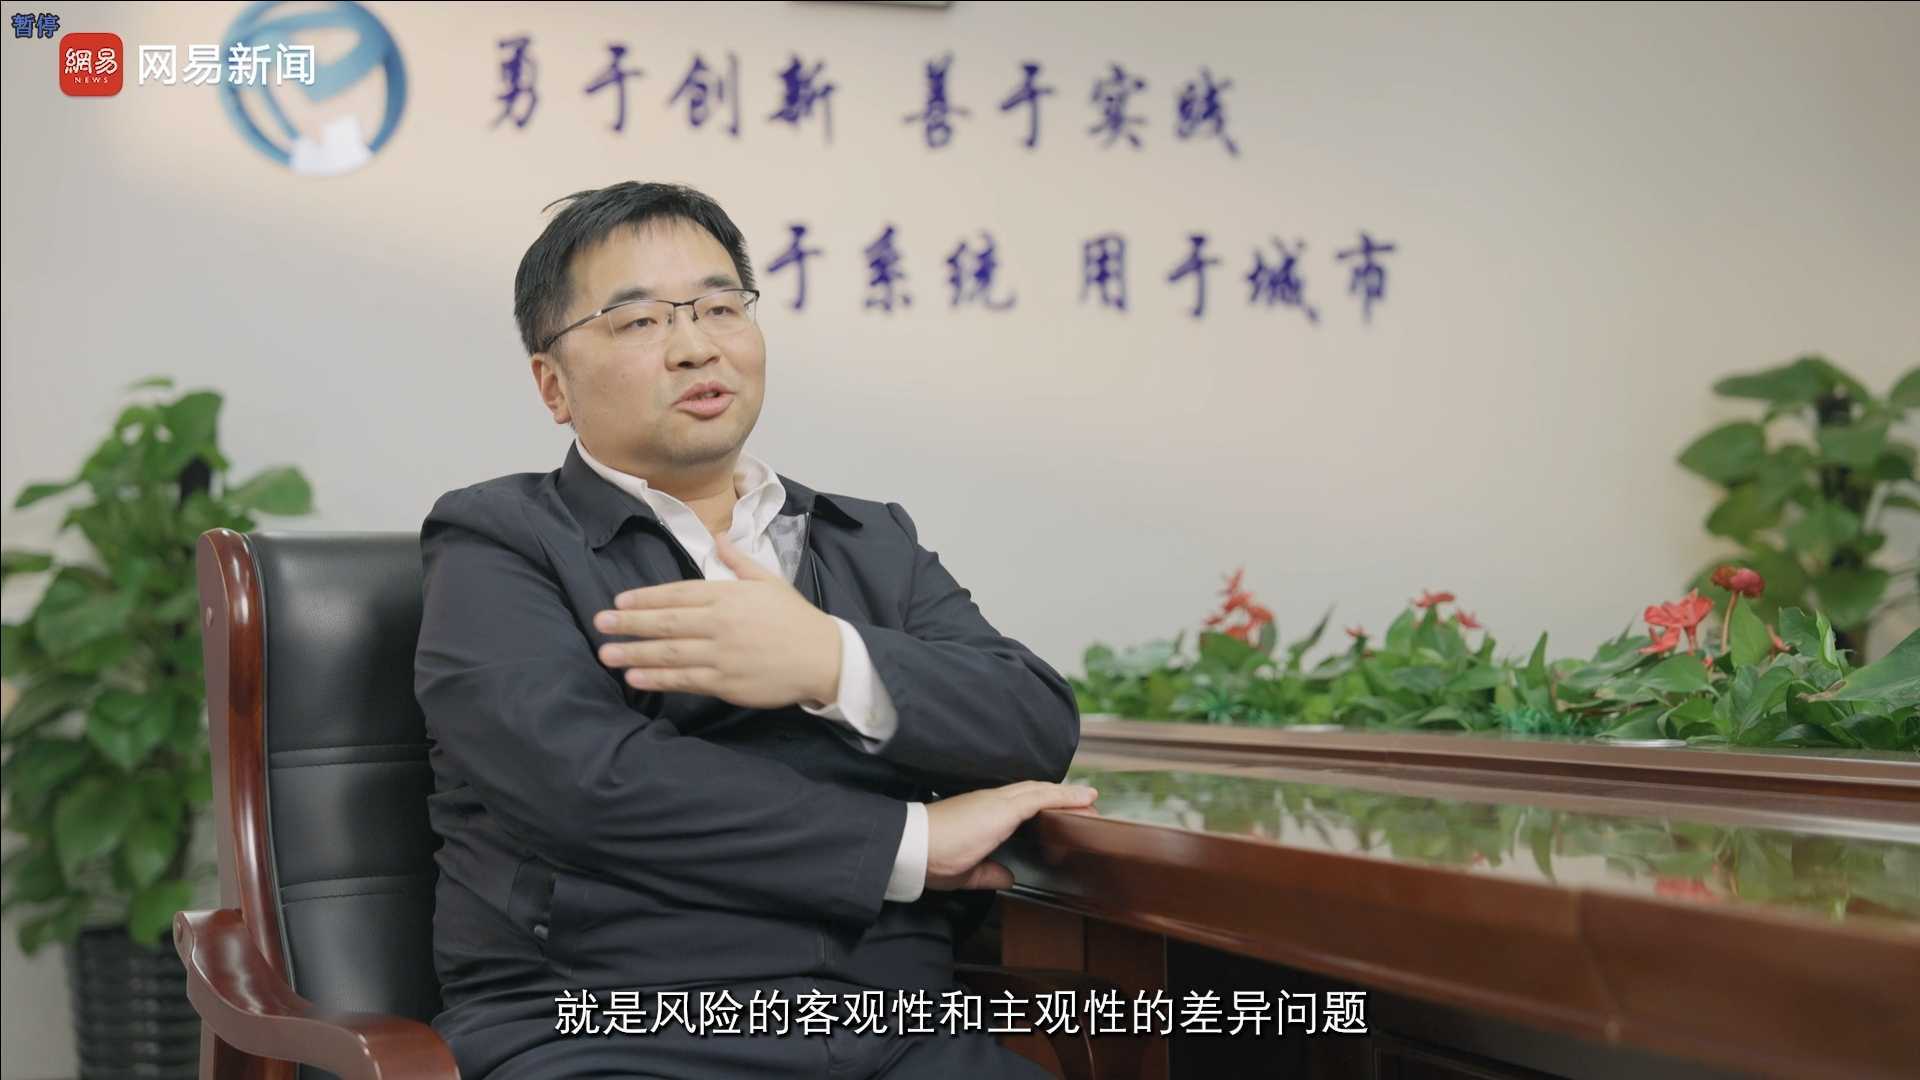 网易新闻丨系列纪录片《创新的力量》-北京市科学技术研究院、系统工程研究所所长朱伟